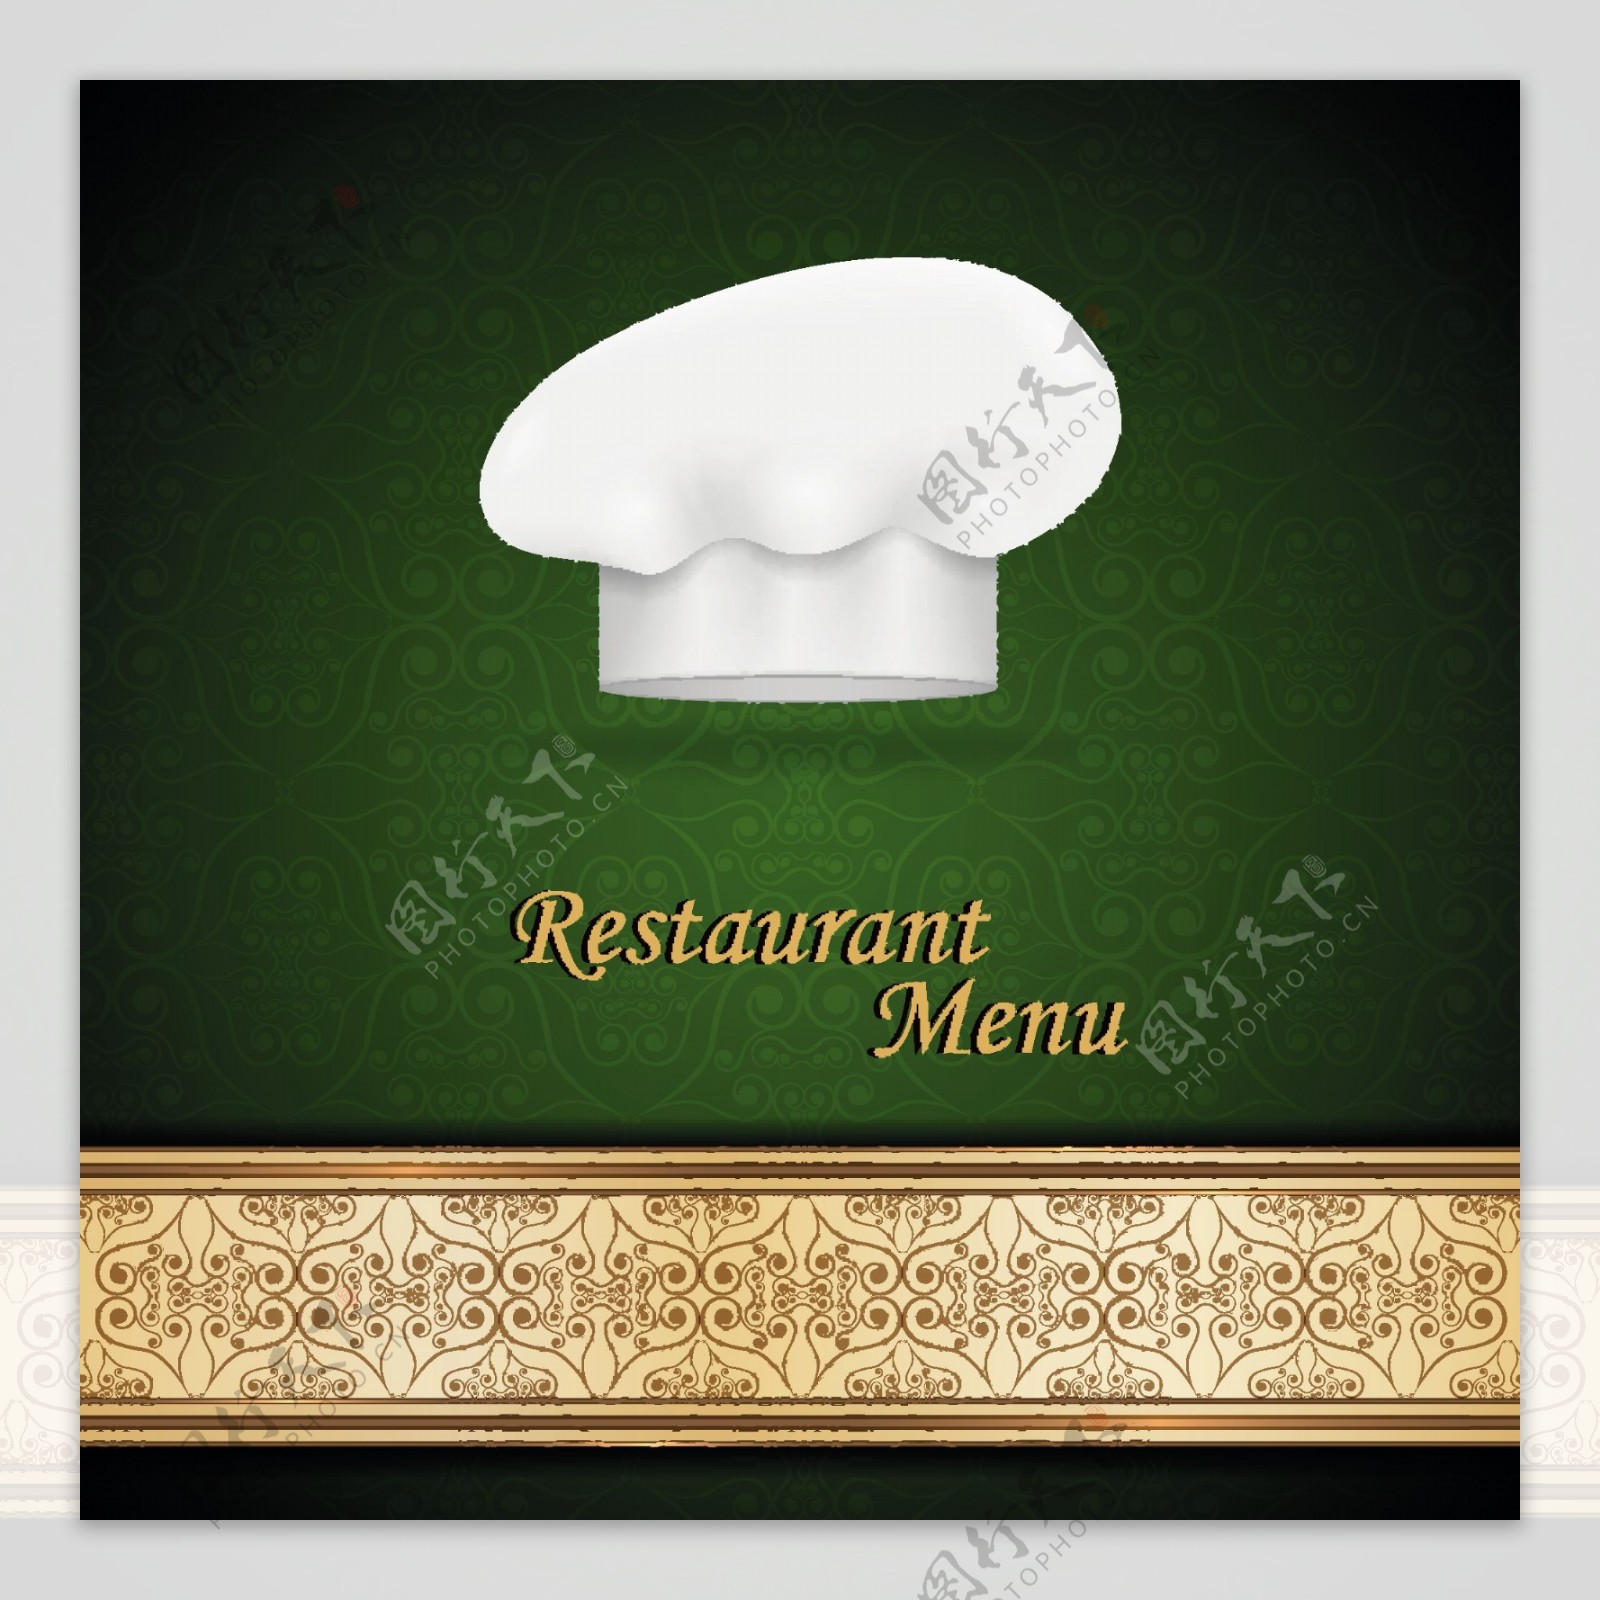 厨师的帽子和餐馆的菜单封面设计矢量图04